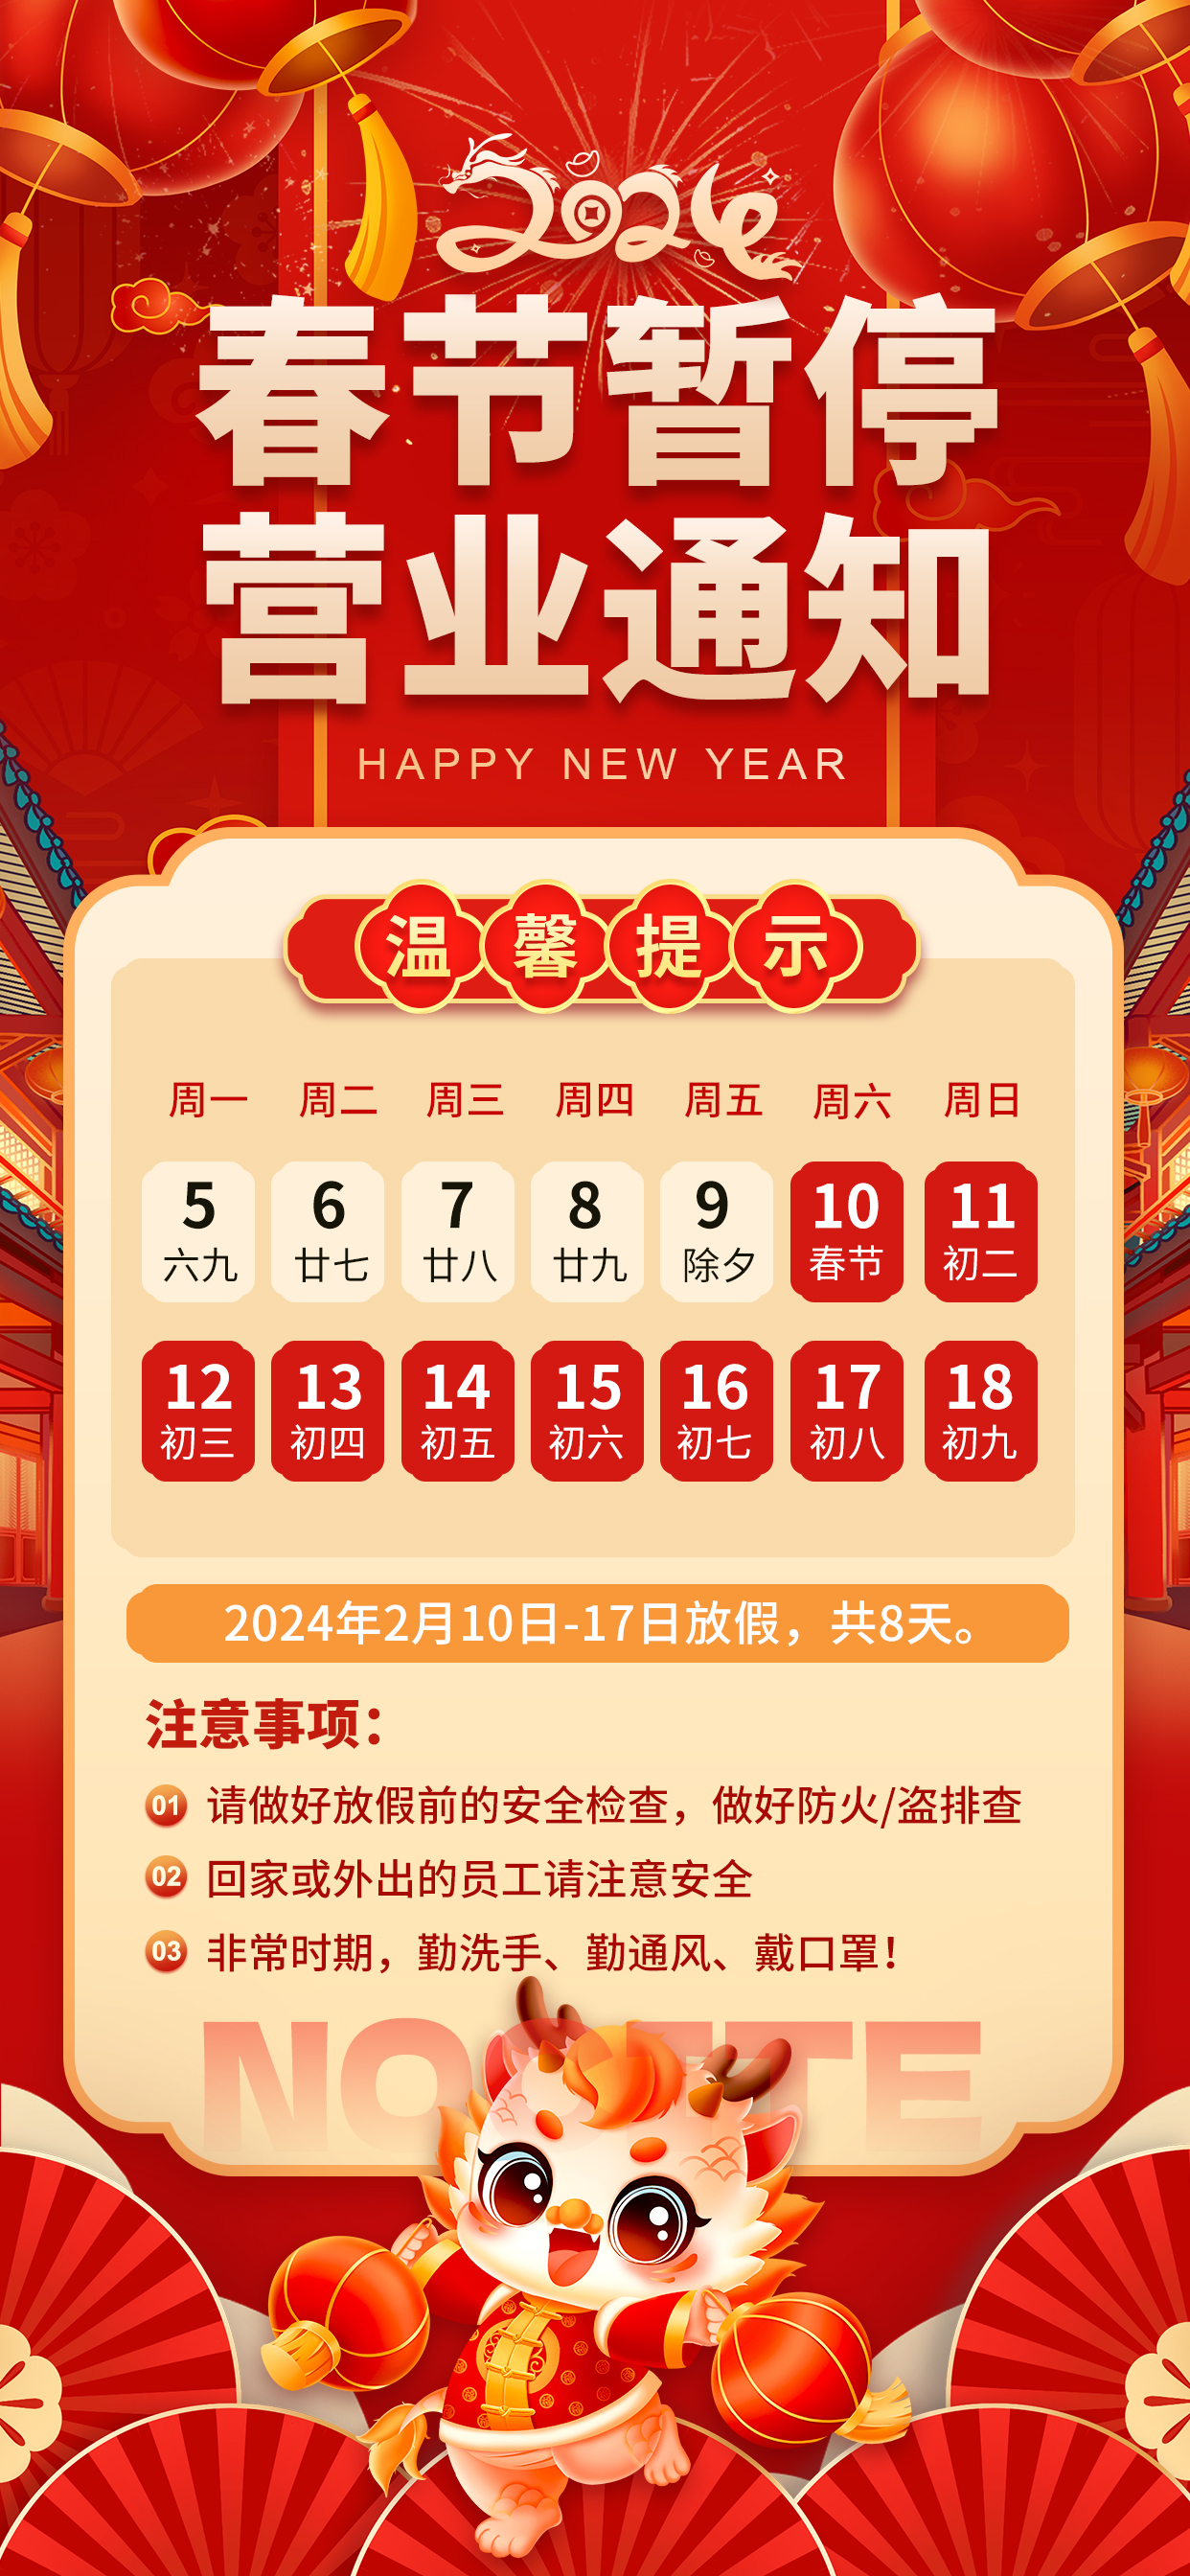 春节暂停营业通知龙红色广告宣传手机海报图片